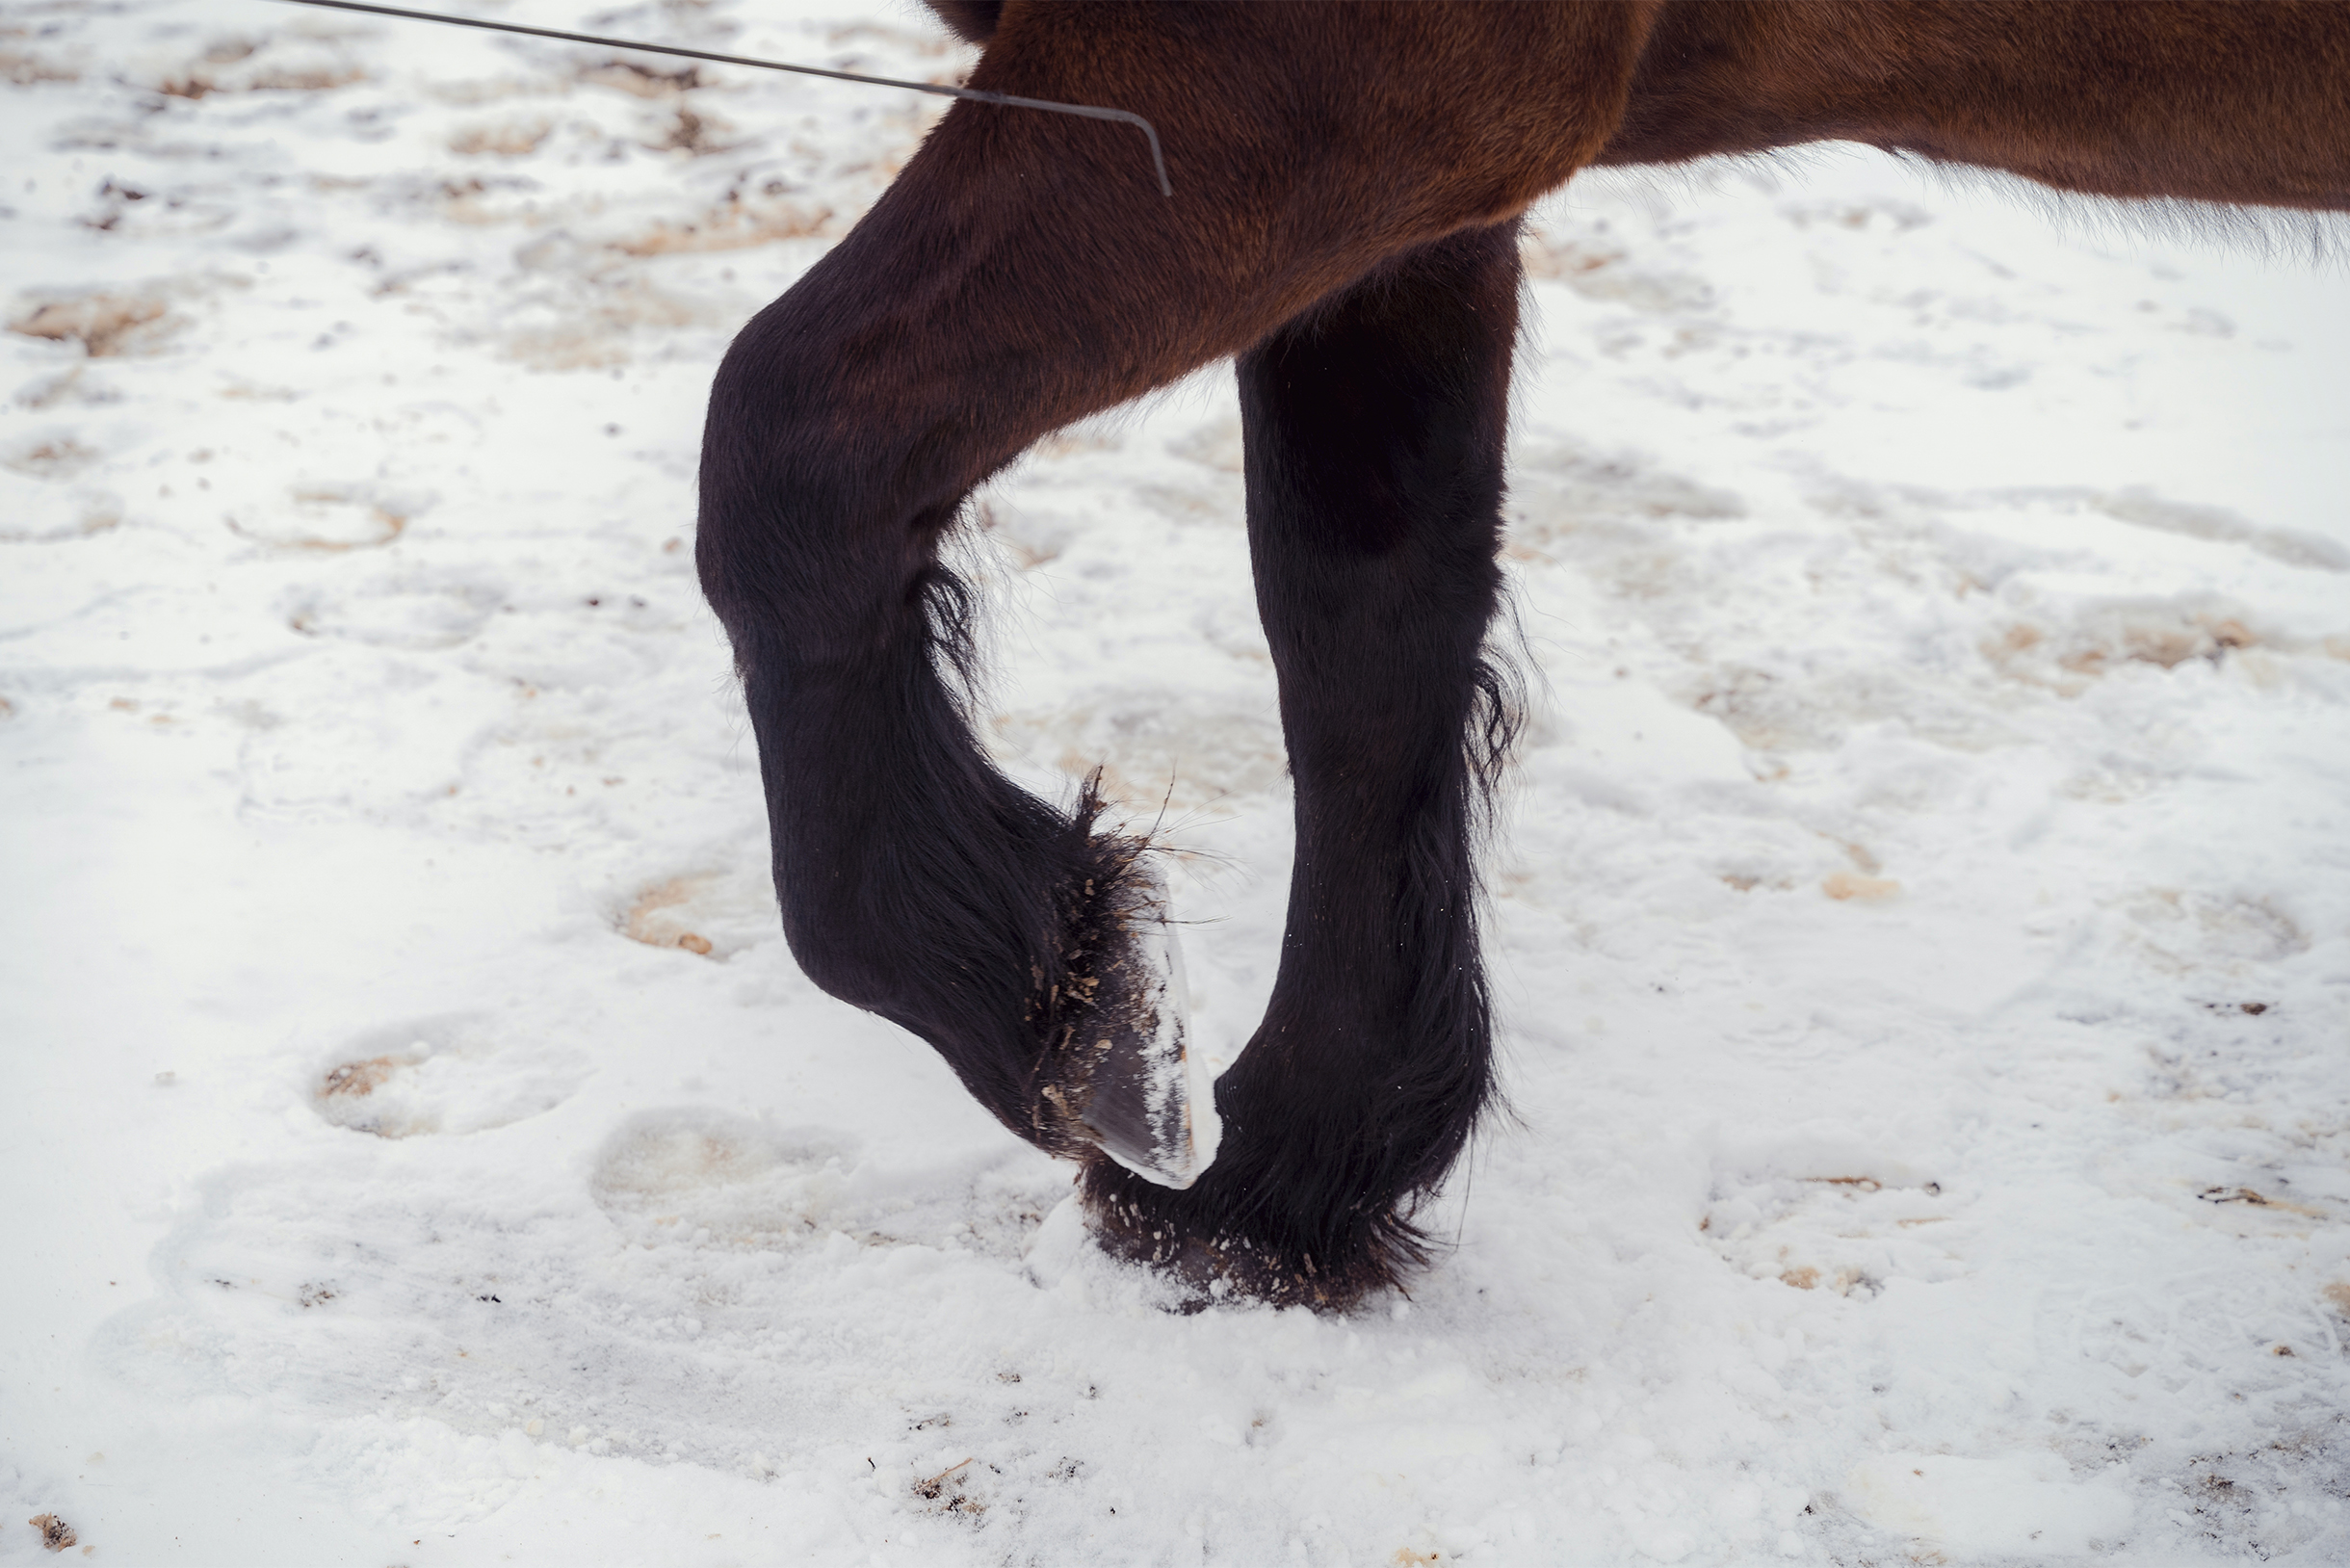 Семен демонстрирует приемы лошадиного фотомоделинга: посмотрите, какой изящный изгиб